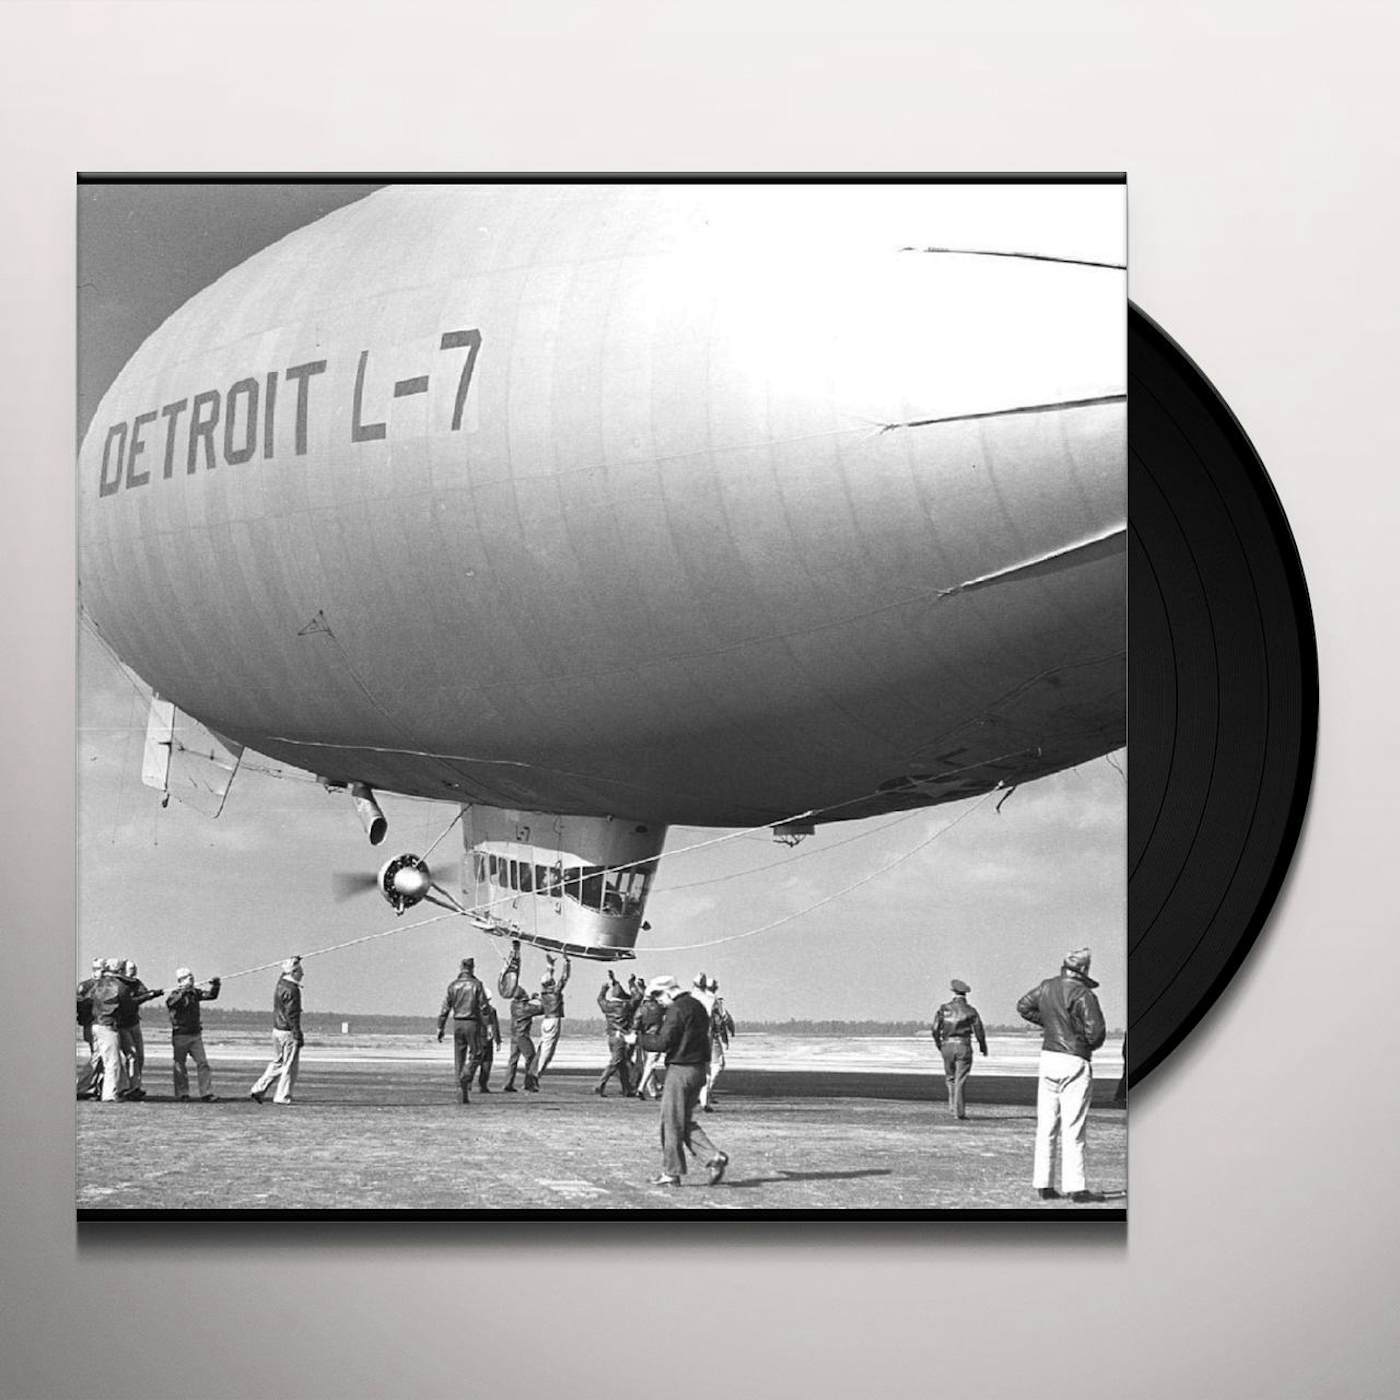 L7 Detroit Vinyl Record